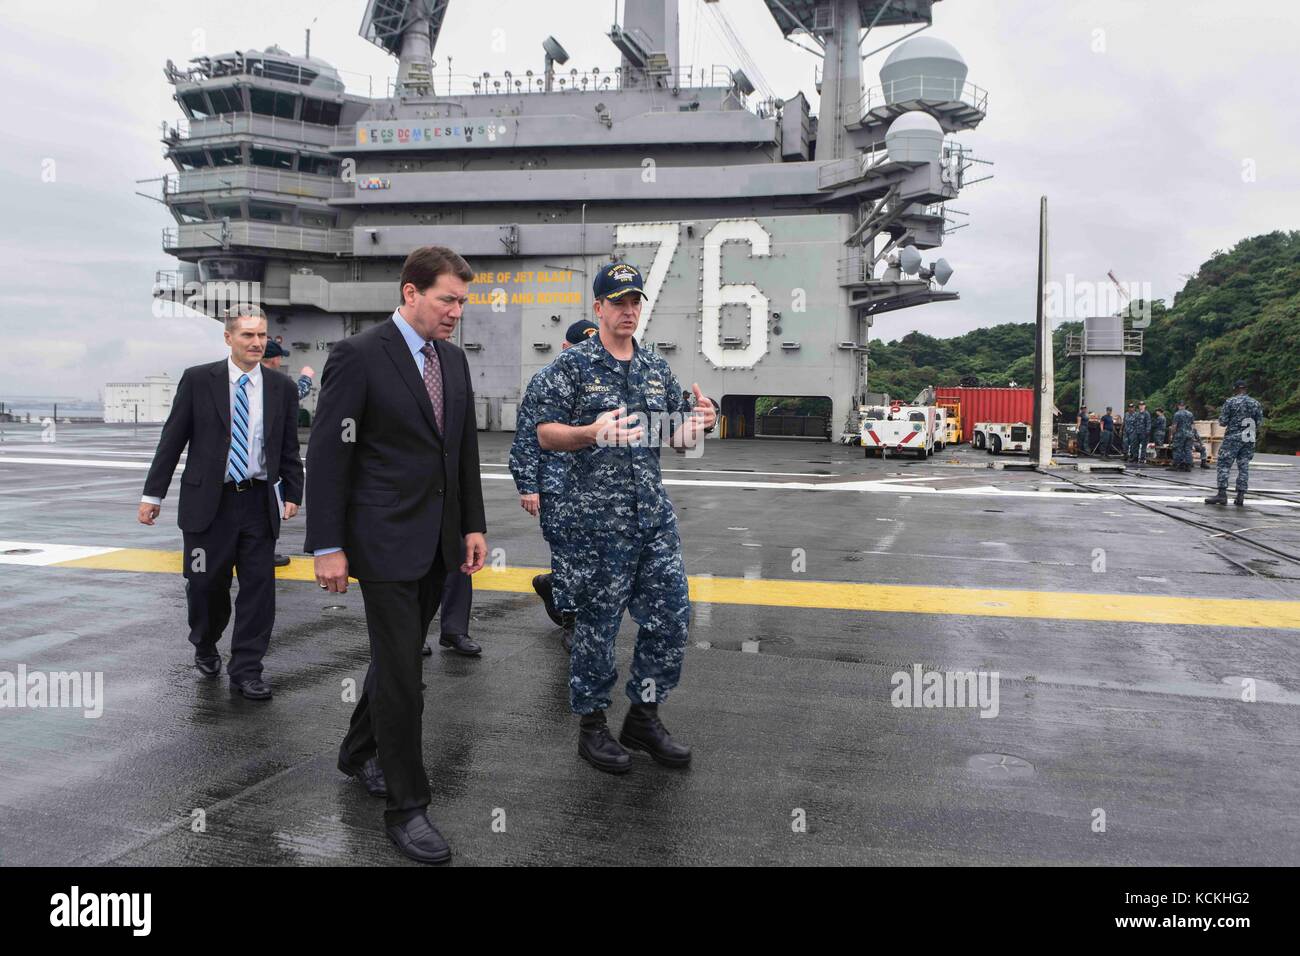 Comandante de la marina de los EE.UU buzz donnelly (derecha) da el embajador de los EE.UU. Japón William hagerty un tour de la marina de los EE.UU. clase Nimitz portaaviones USS Ronald Reagan, 6 de septiembre de 2017 en Yokosuka, Japón. (Foto por MCS3 macadam weissman via planetpix) Foto de stock